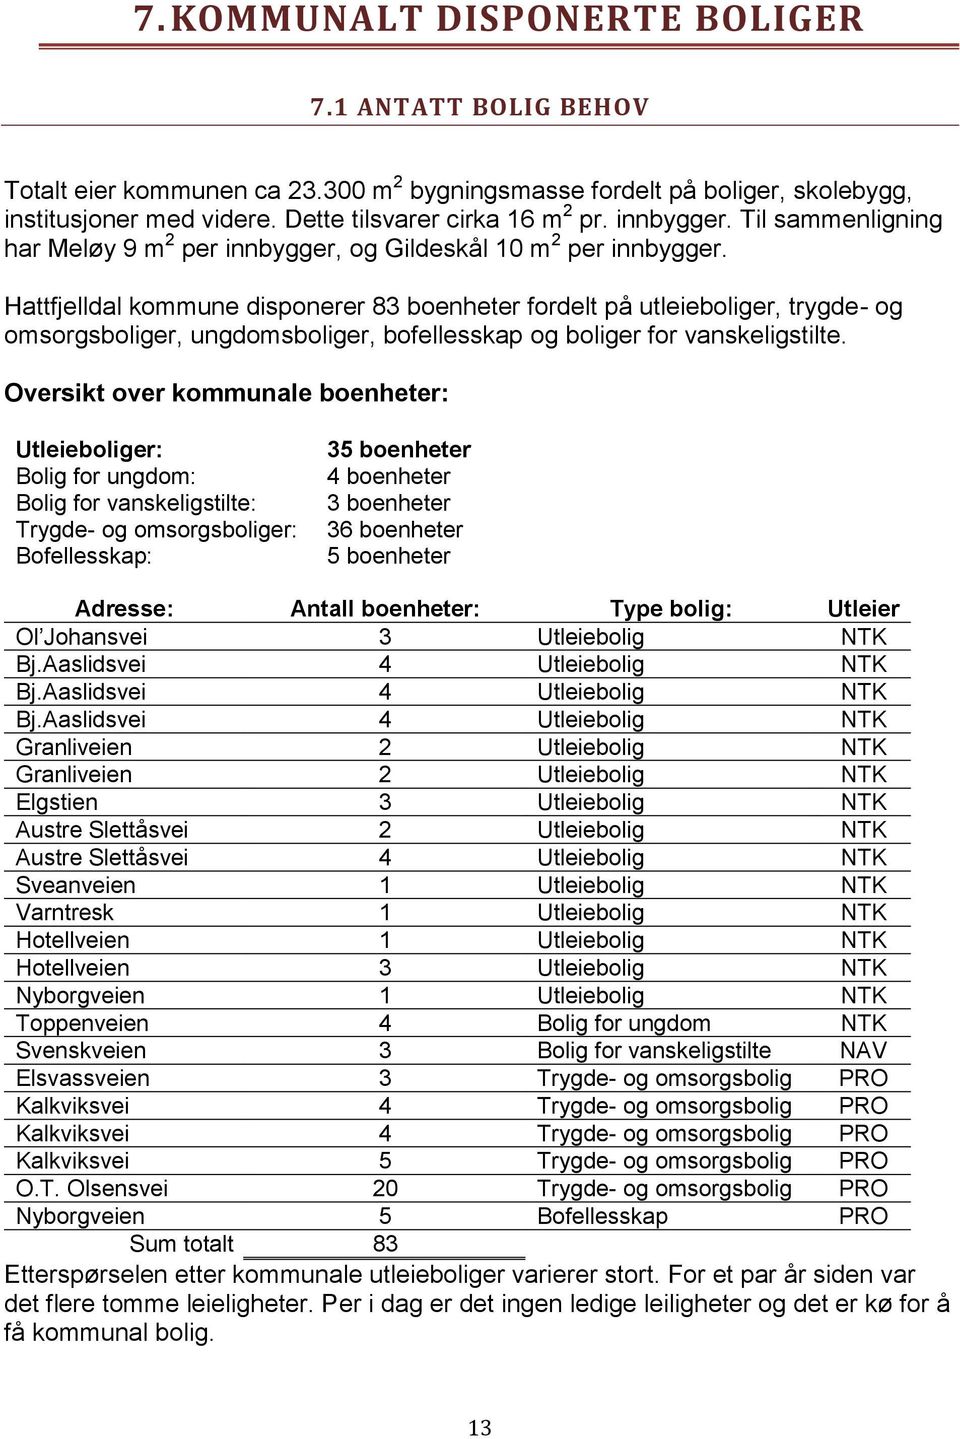 Hattfjelldal kommune disponerer 83 boenheter fordelt på utleieboliger, trygde- og omsorgsboliger, ungdomsboliger, bofellesskap og boliger for vanskeligstilte.